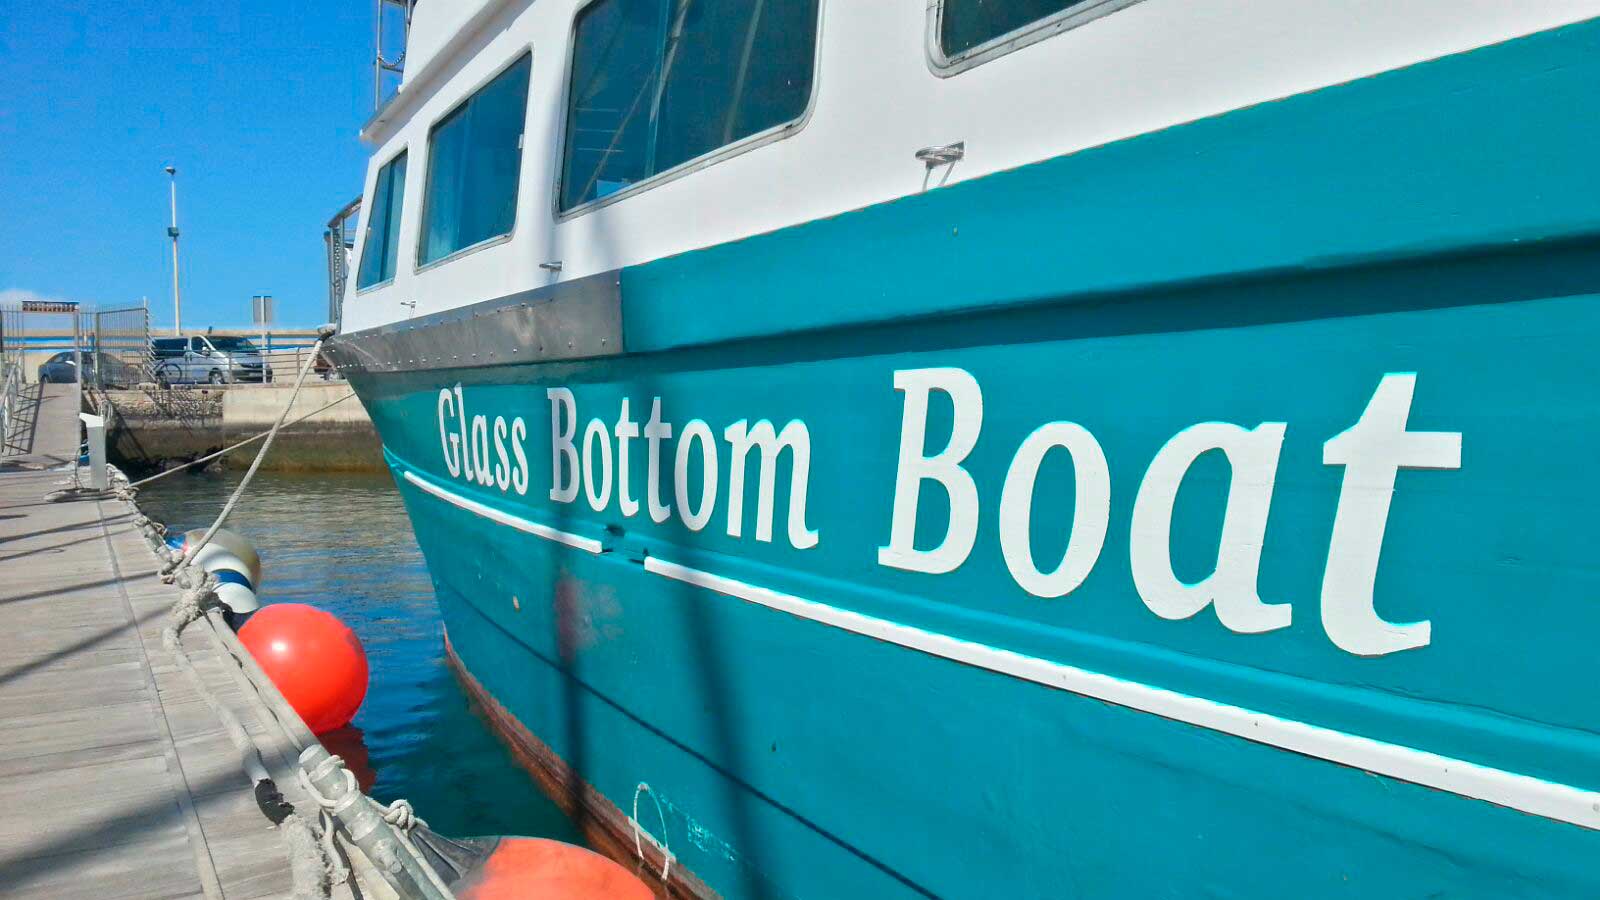 traghetto majorero glass bottom boat